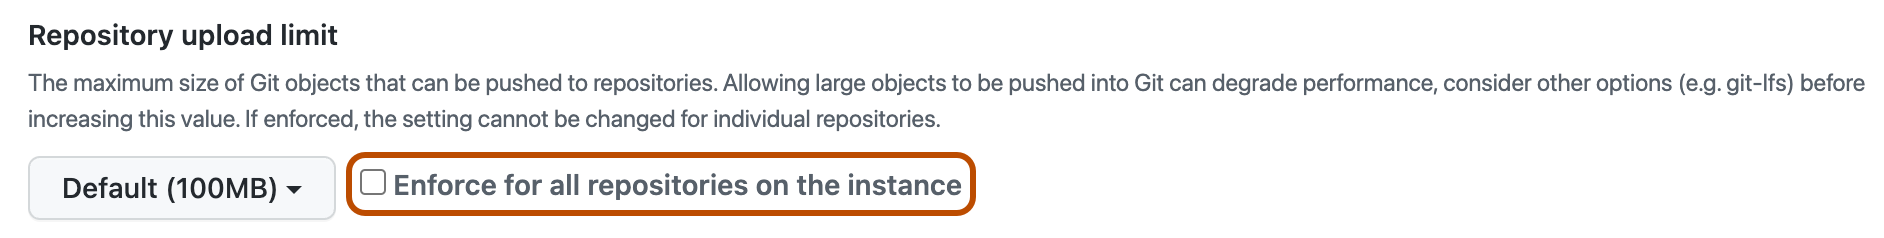 Captura de pantalla de la sección de la directiva "Límite de carga del repositorio". La casilla "Aplicar en todos los repositorios" está resaltada con un contorno naranja.